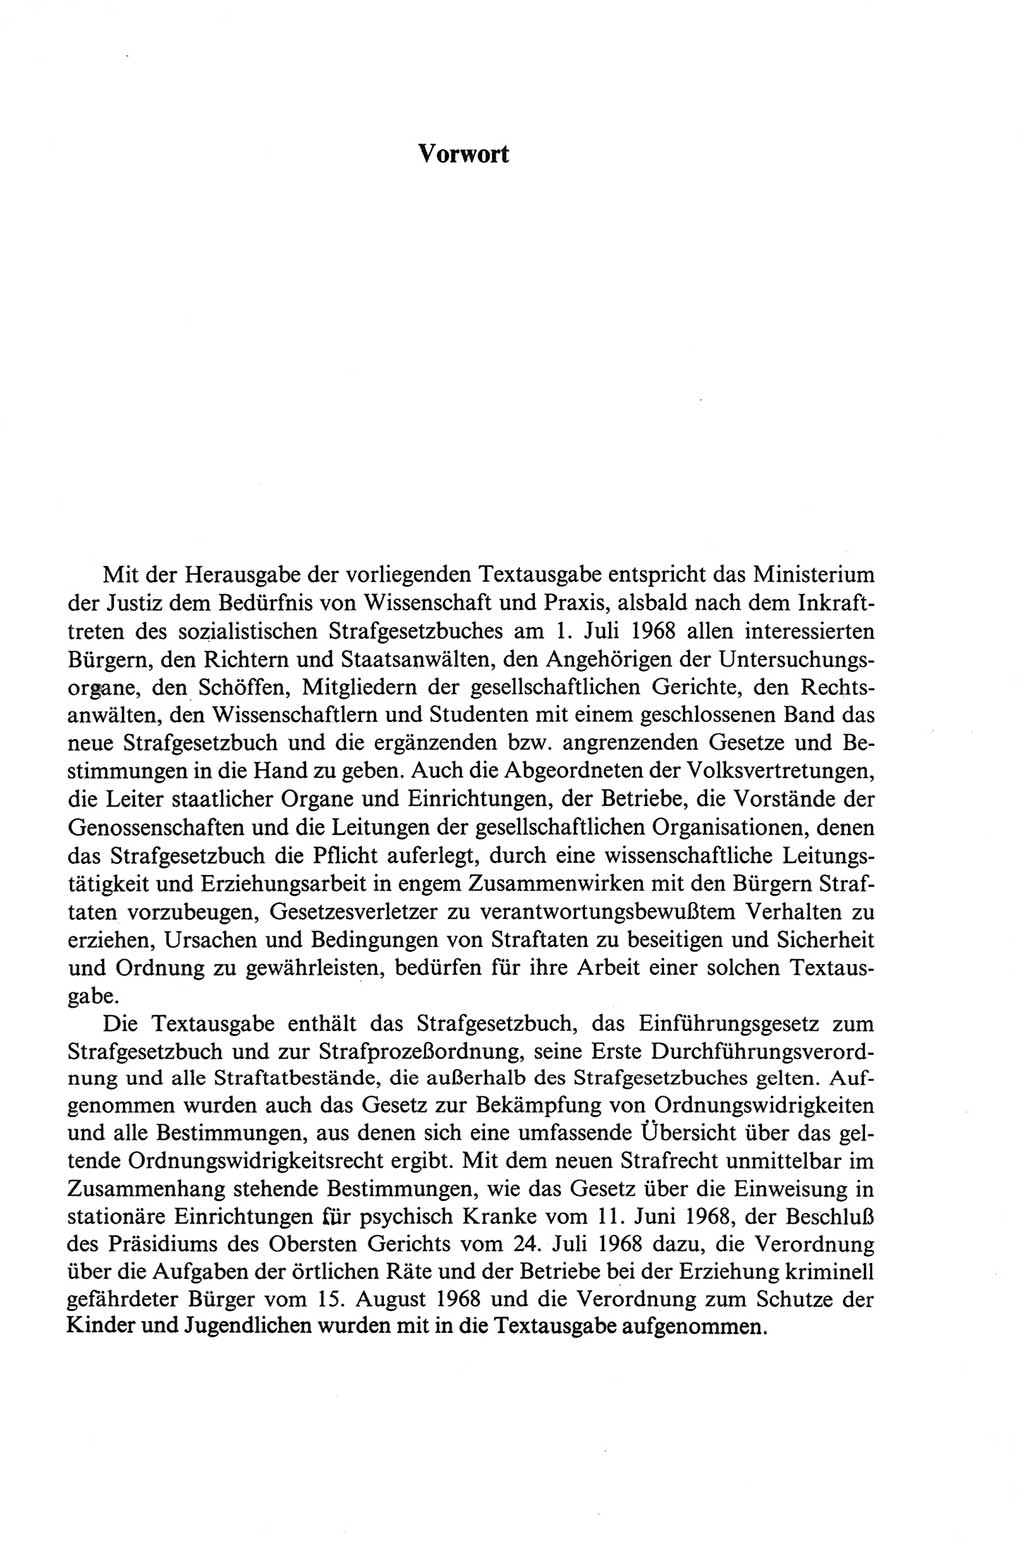 Strafgesetzbuch (StGB) der Deutschen Demokratischen Republik (DDR) und angrenzende Gesetze und Bestimmungen 1968, Seite 5 (StGB Ges. Best. DDR 1968, S. 5)